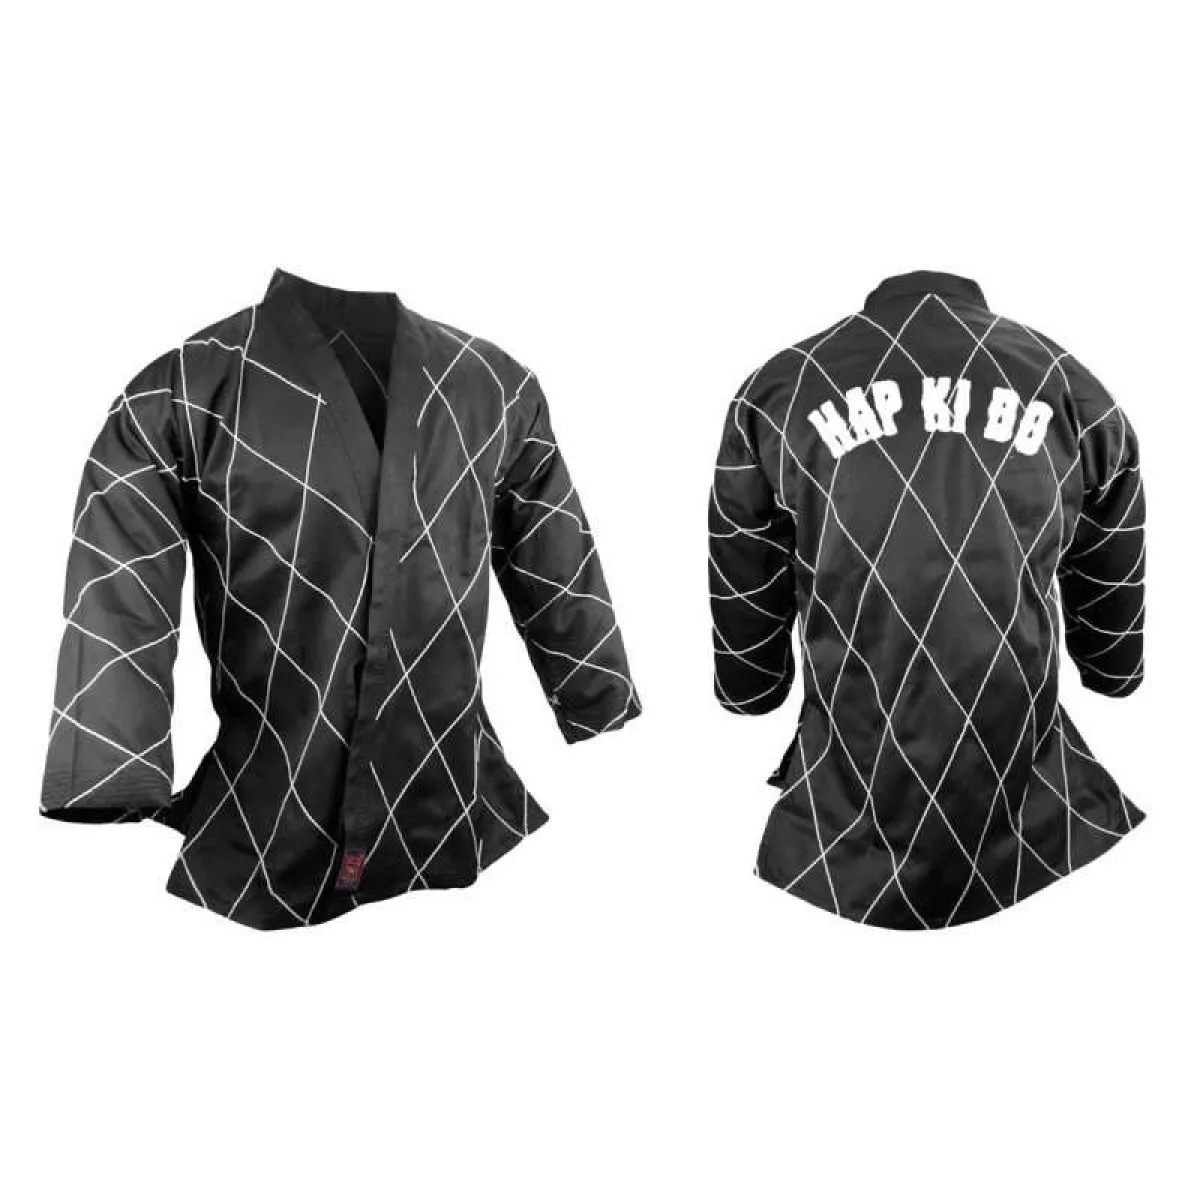 Hapkido jacket black/white